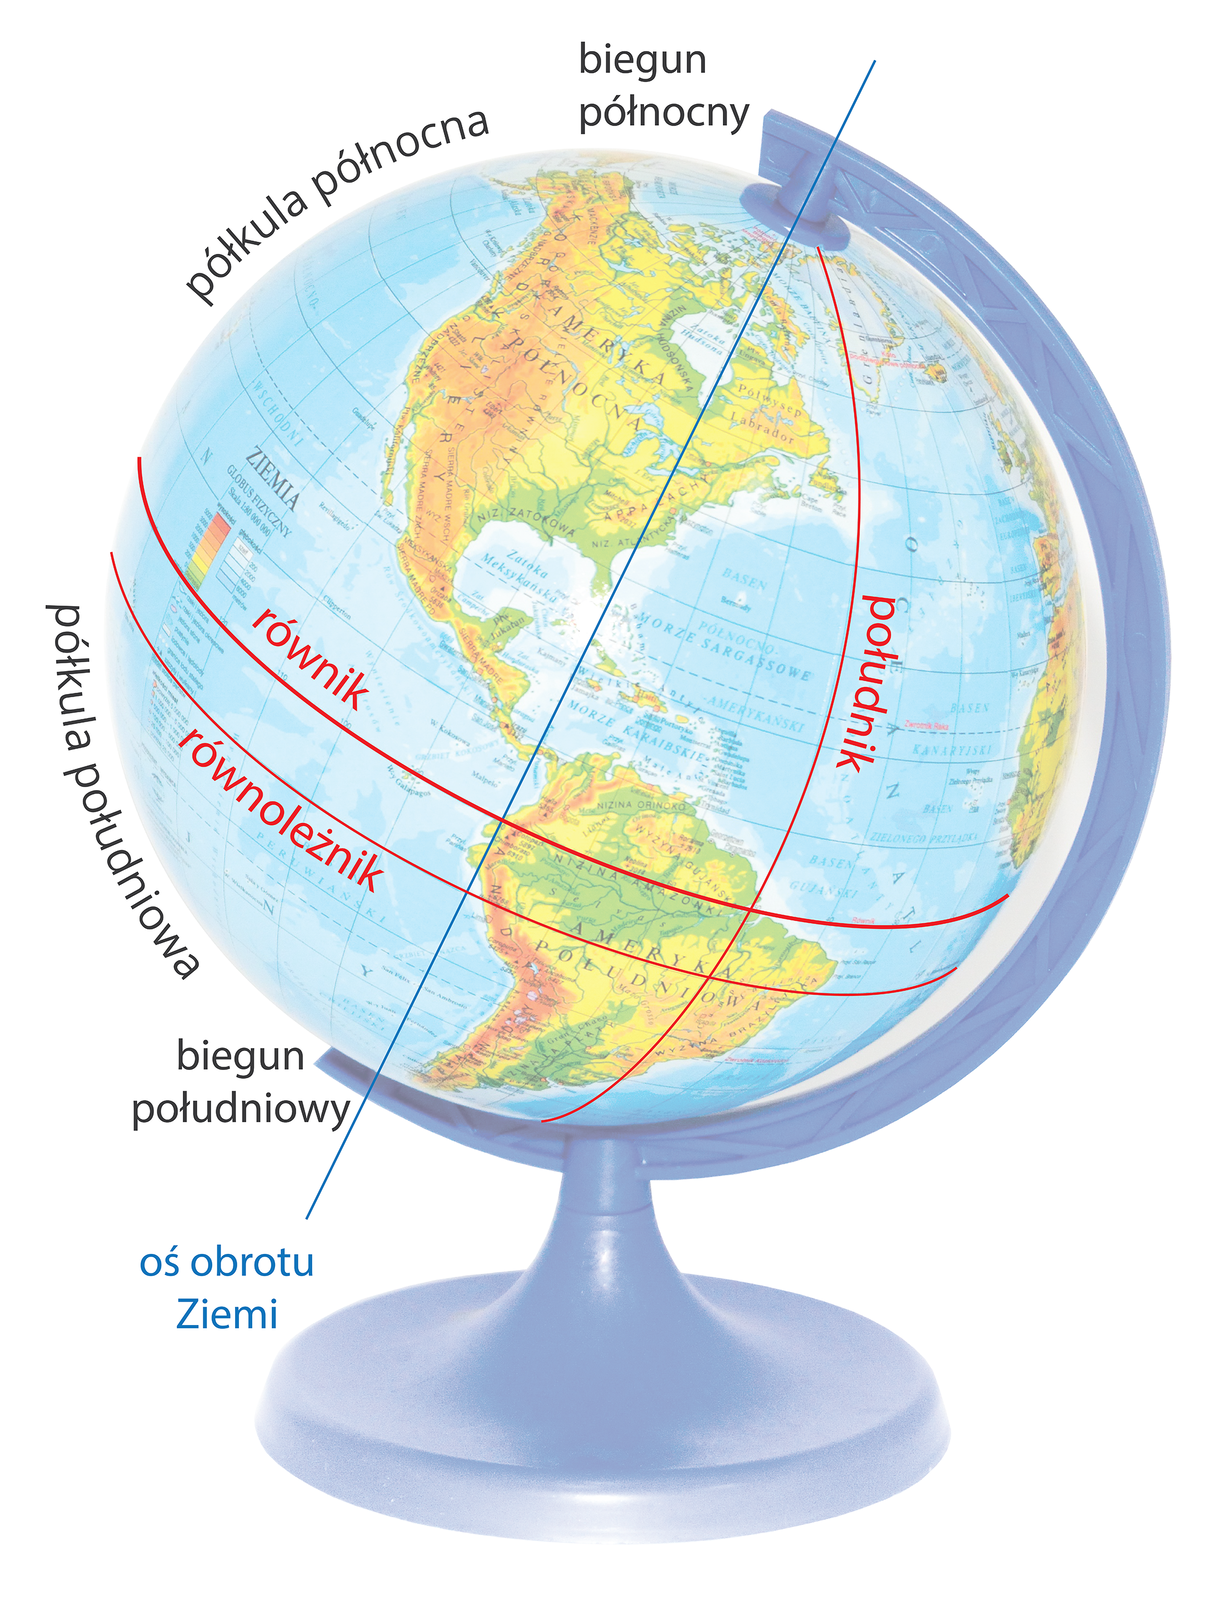 Zdjęcie przedstawia globus z nałożoną siatką geograficzną. Zaznaczony jest równik, który dzieli planetę na półkulę północną i południową, południk, biegun północny, biegun południowy. Oś obrotu Ziemi jest nachylona.